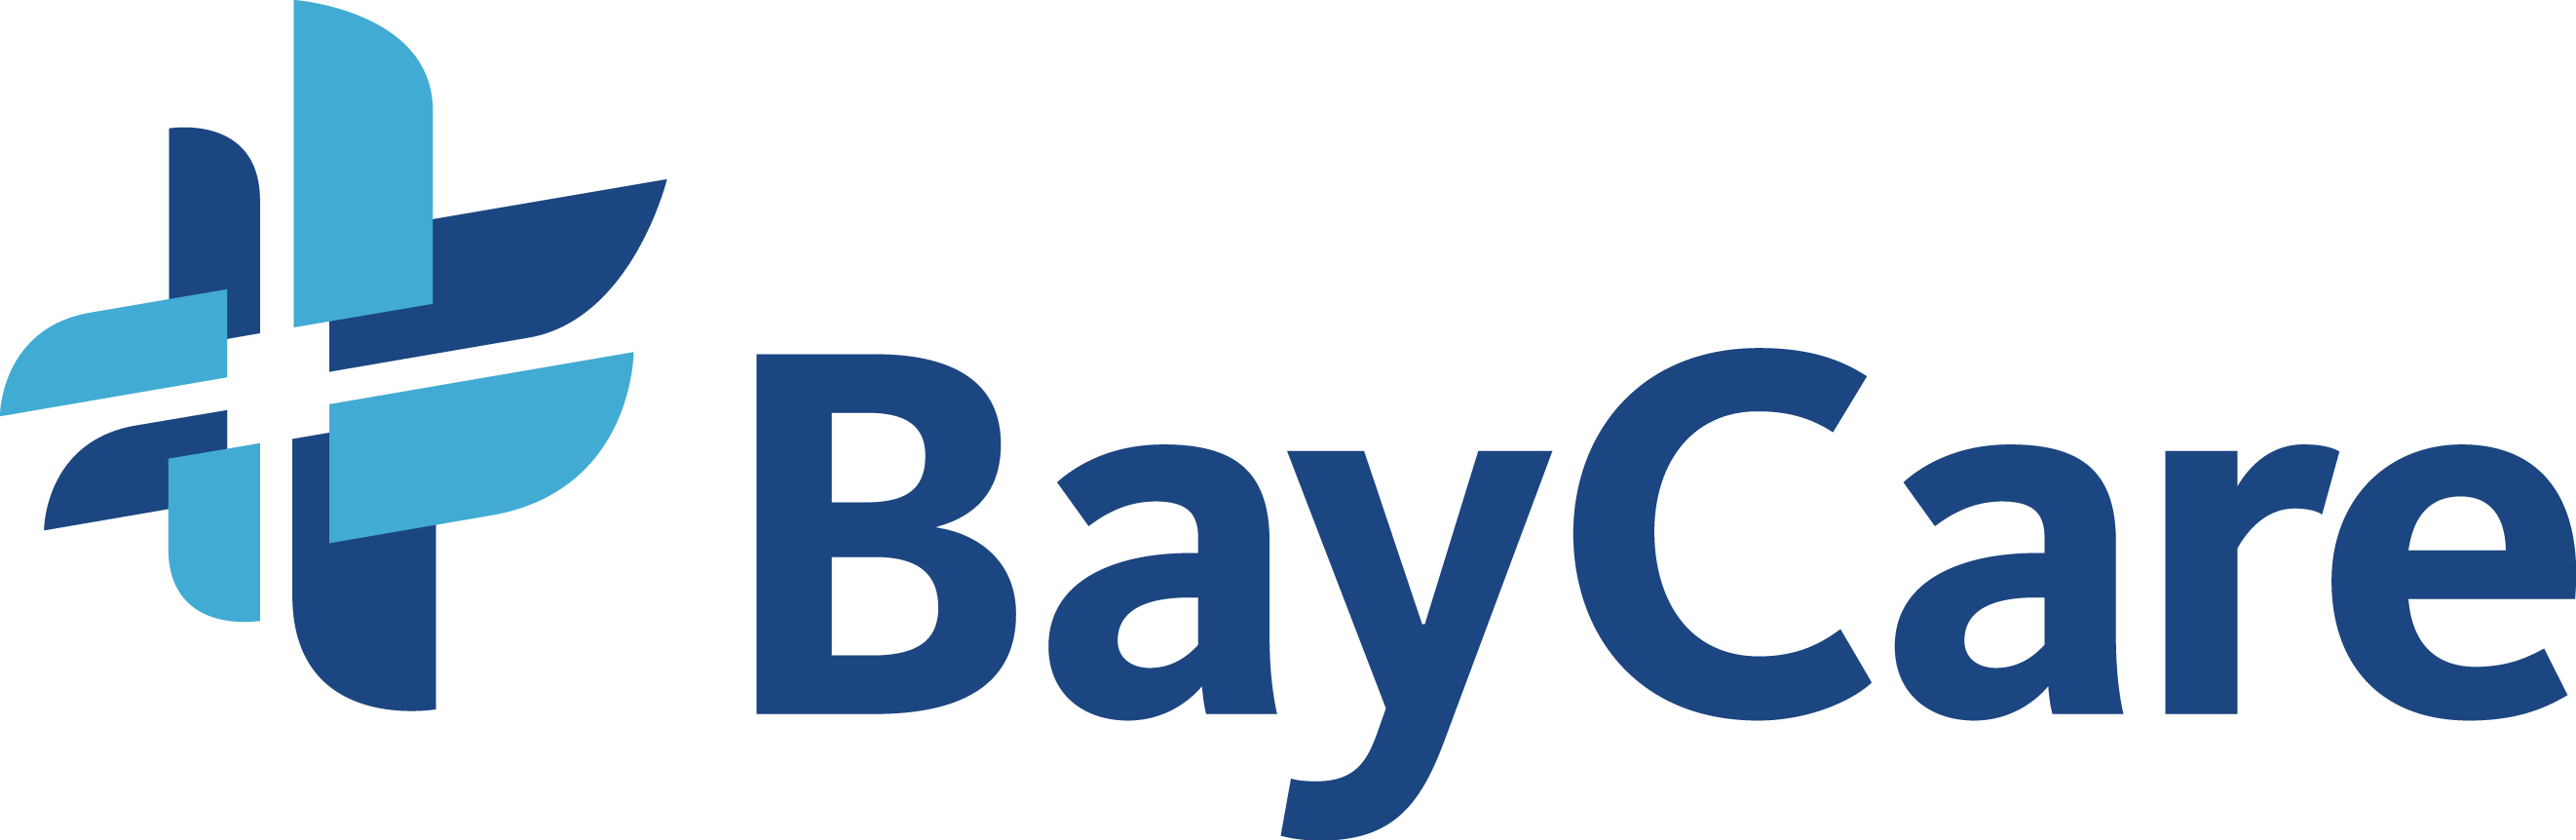 BayCare Health System Company Logo